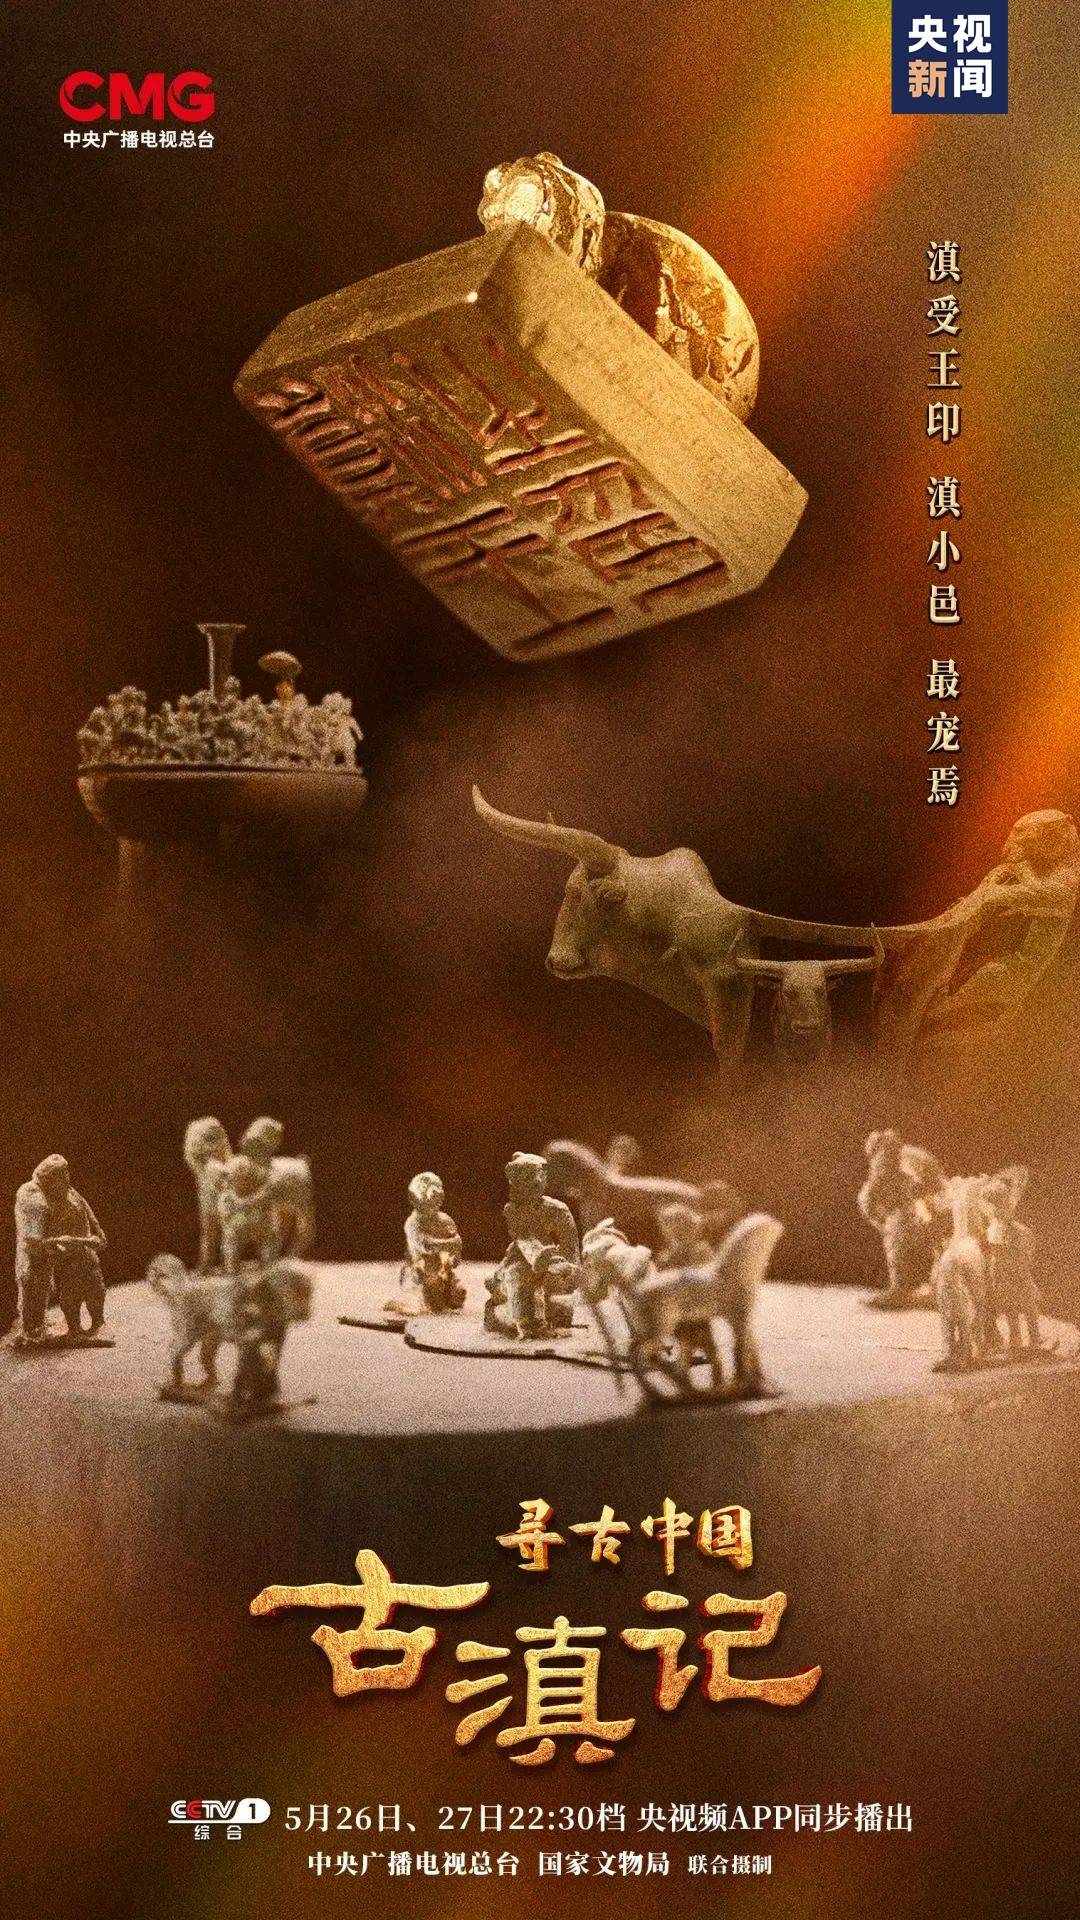 大型系列纪录片《寻古中国》开播 首部探寻古滇文明